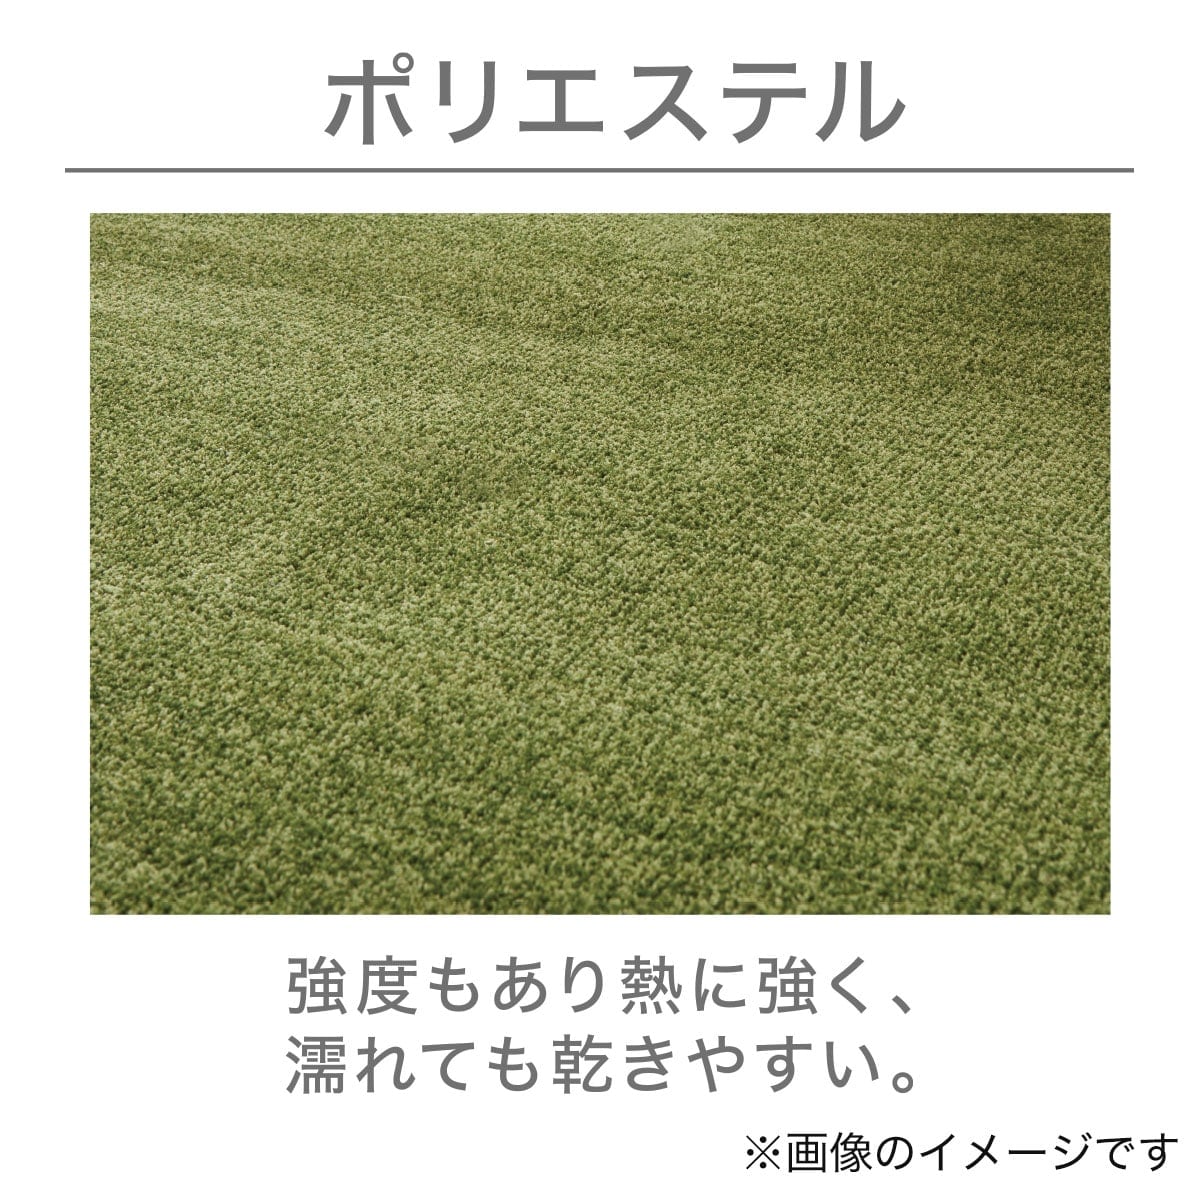 折りたたみカーペット(Nマティカ MO 3J)   【1年保証】